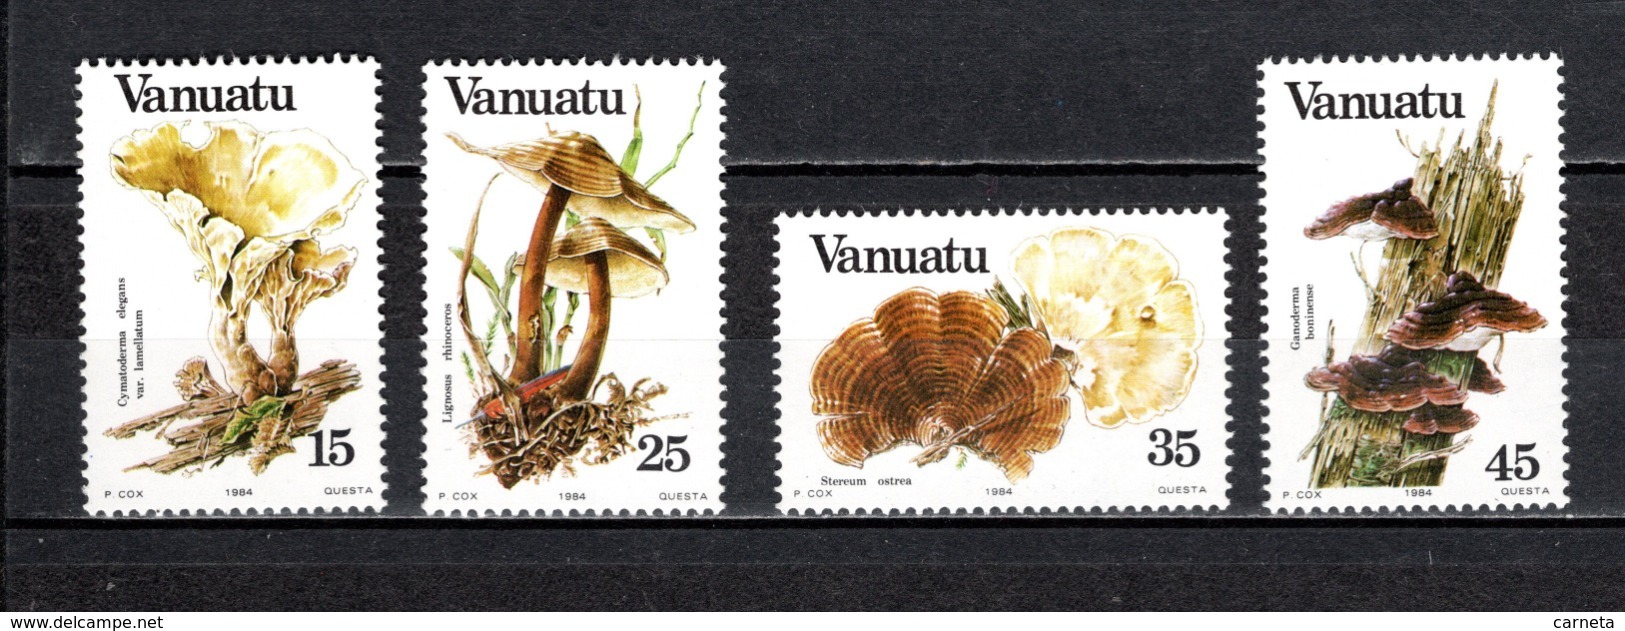 VANUATU  N° 686 à 689  NEUFS SANS CHARNIERE  COTE  9.60€  CHAMPIGNON - Vanuatu (1980-...)